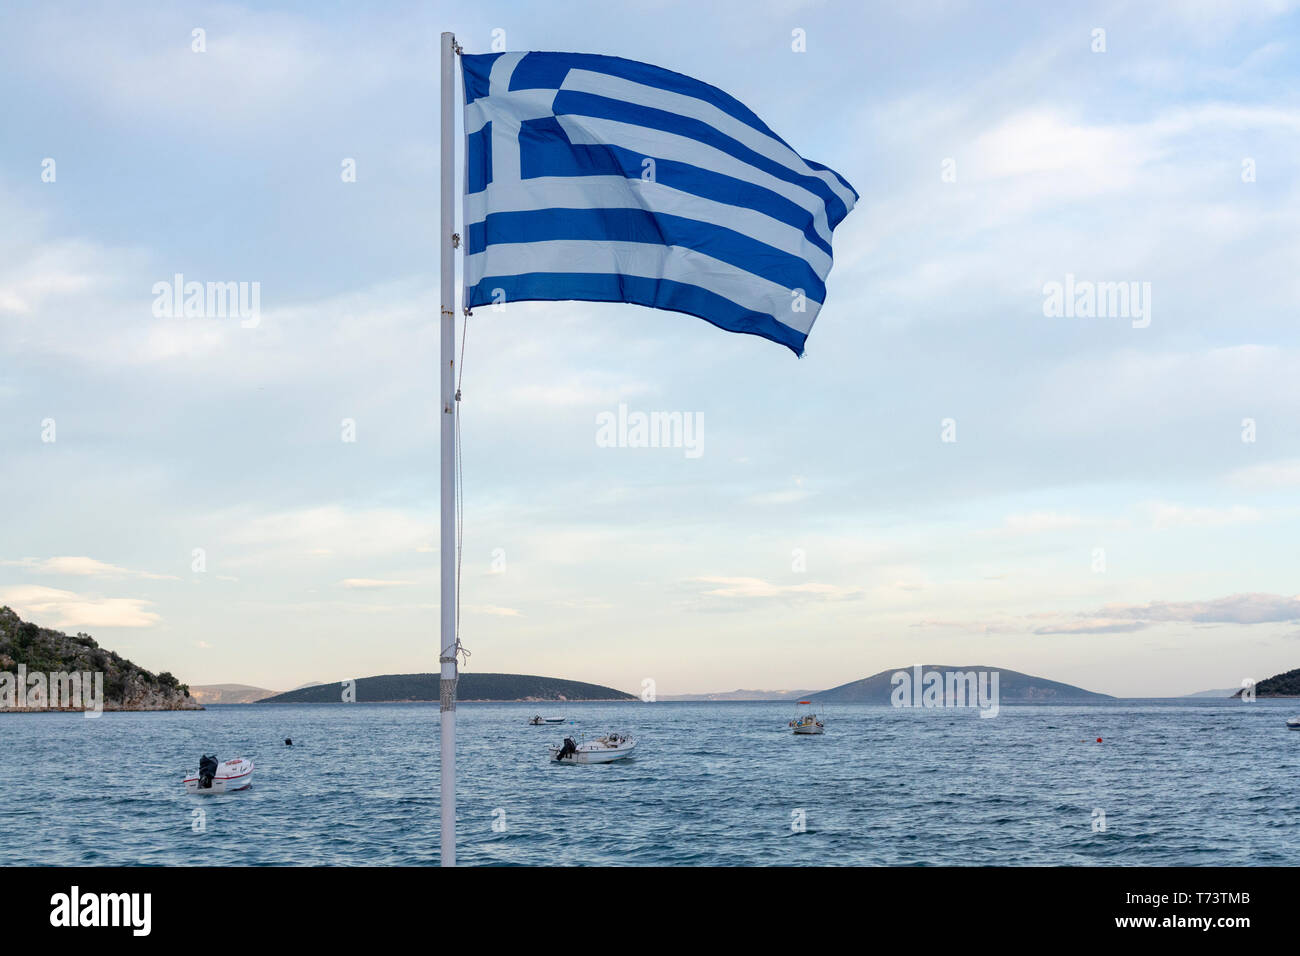 Nationales Symbol von Griechenland, blau-weiße griechische Flagge